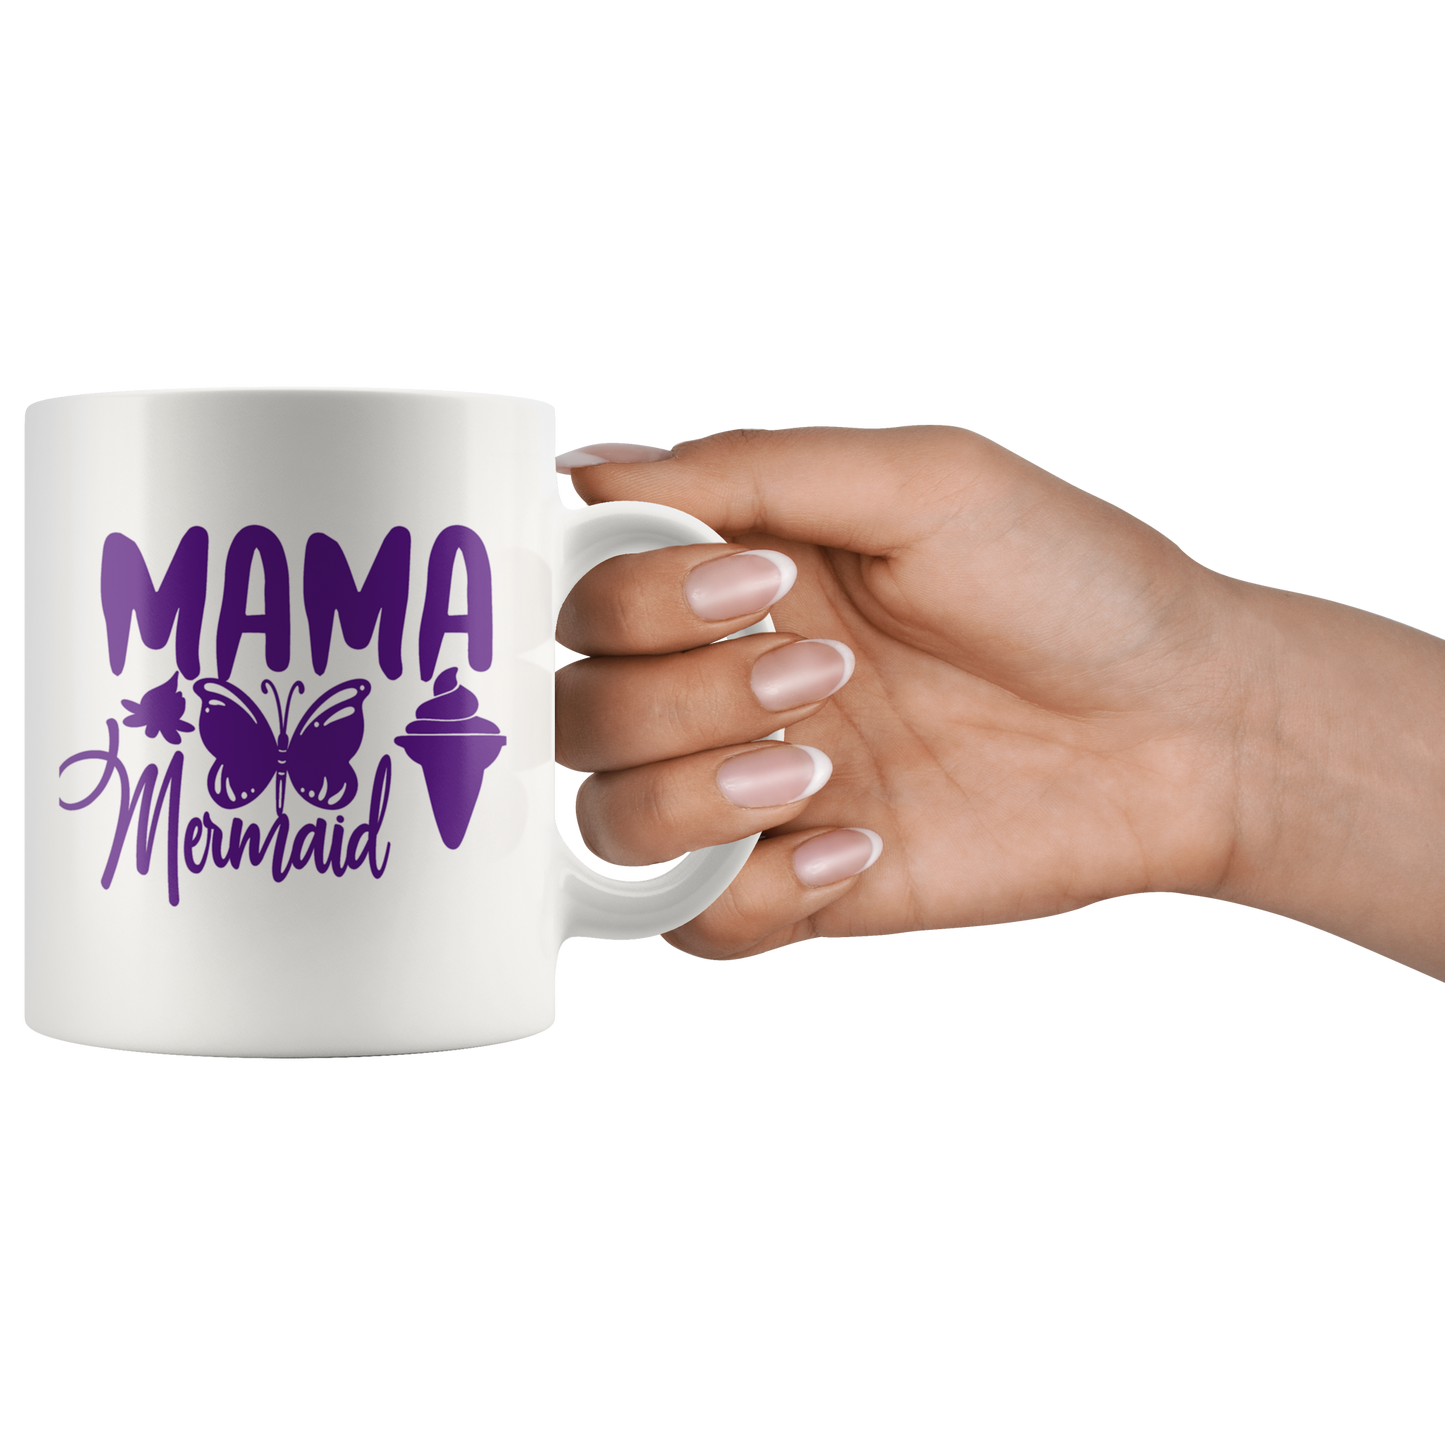 Mama Mermaid Mug (p)